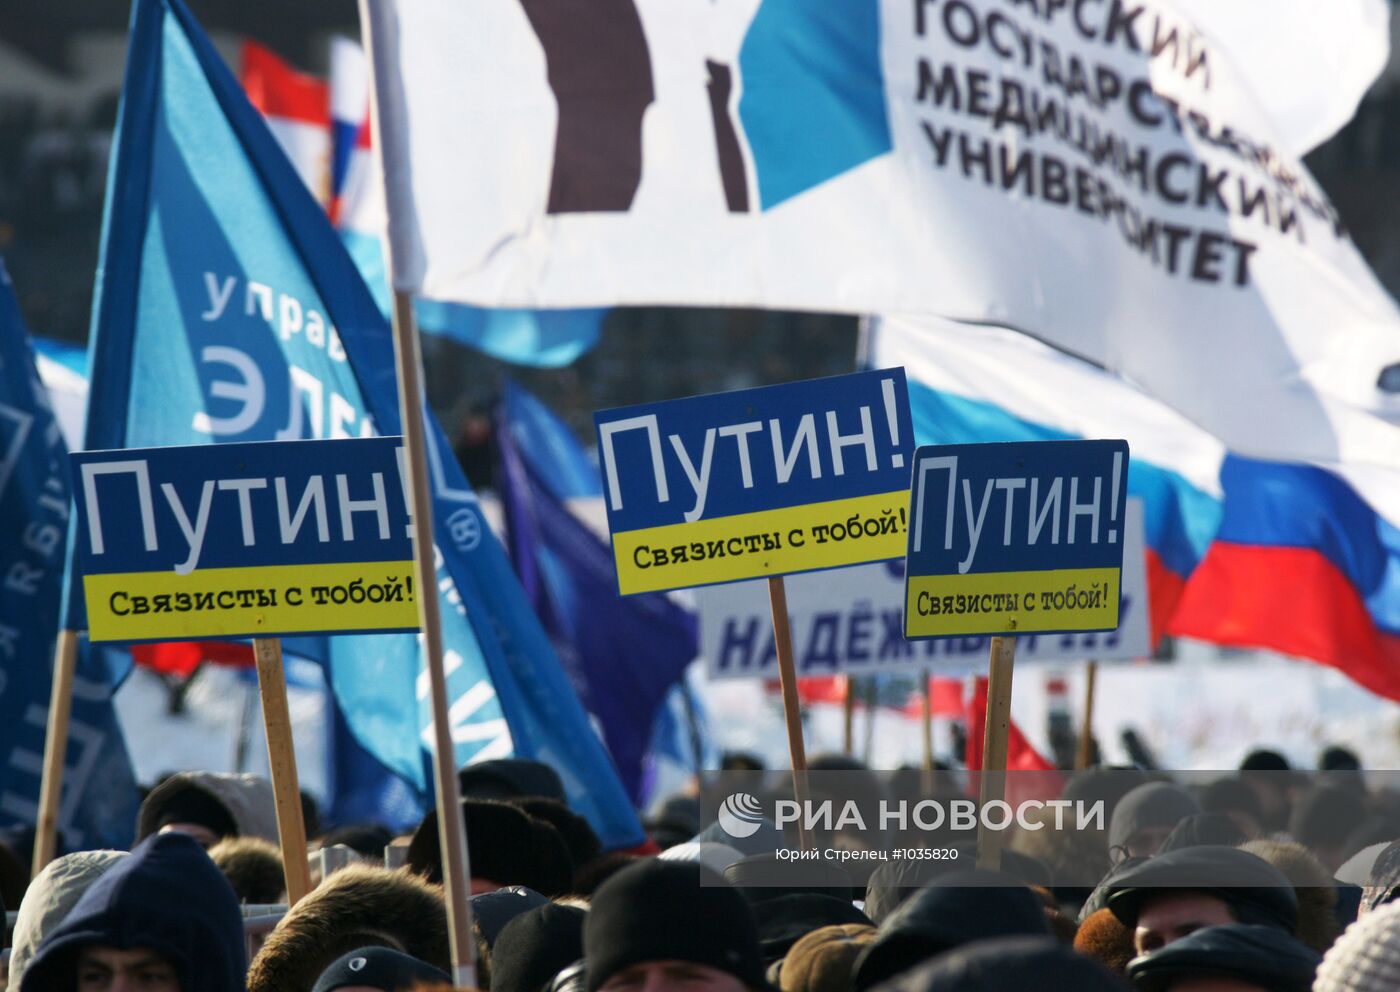 Митинг в поддержку Владимира Путина в Самаре